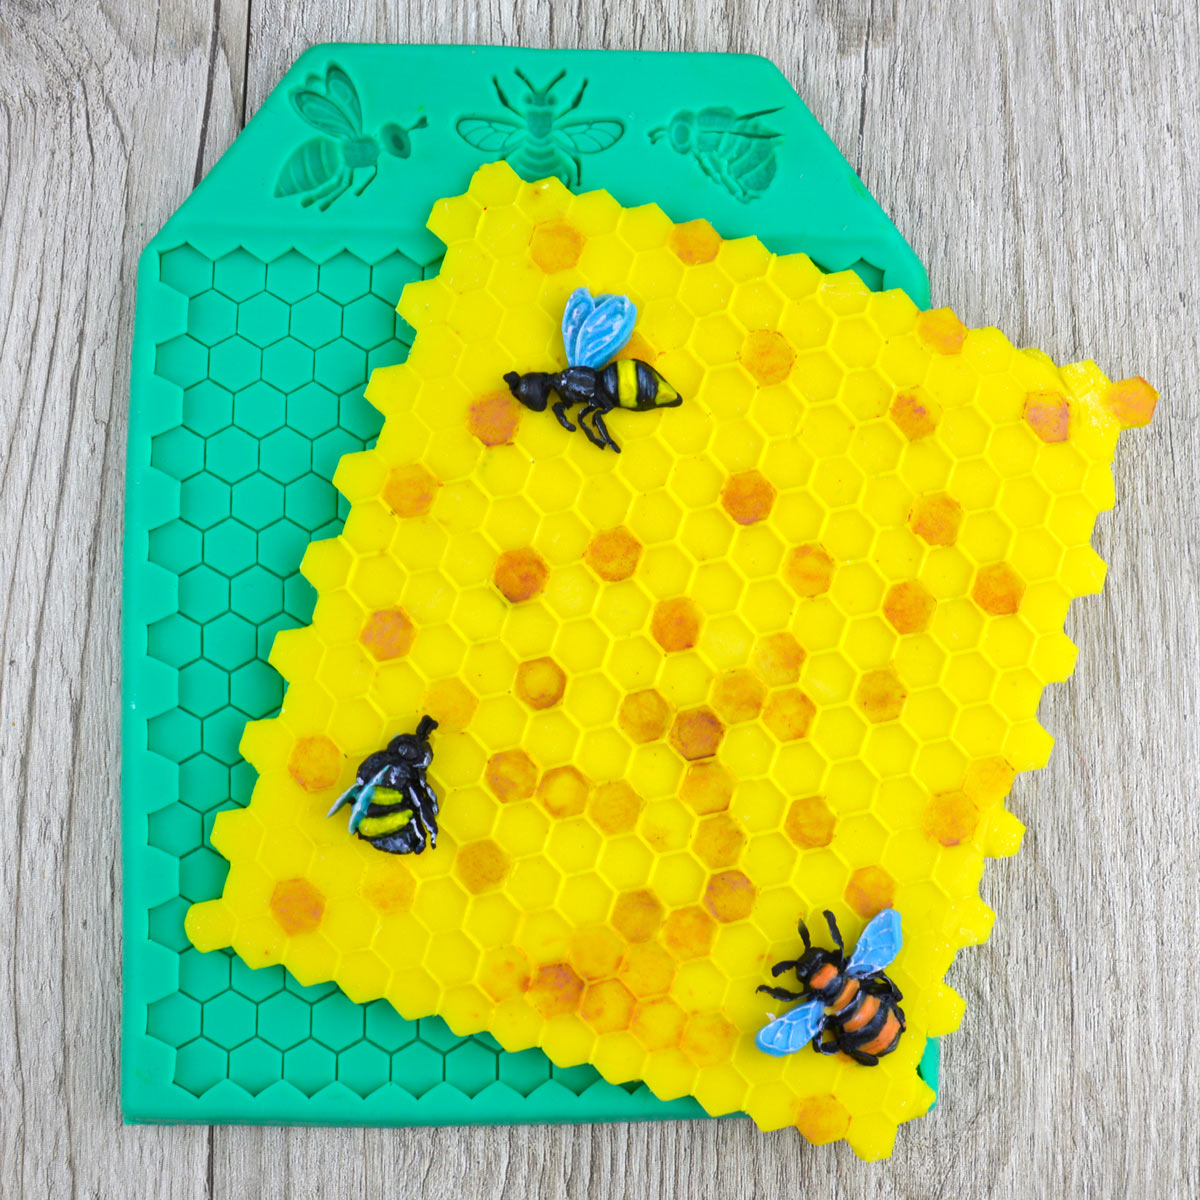 Пчелы лучшие математики или почему пчелиные соты шестиугольные. | Пчела & Человек | Дзен